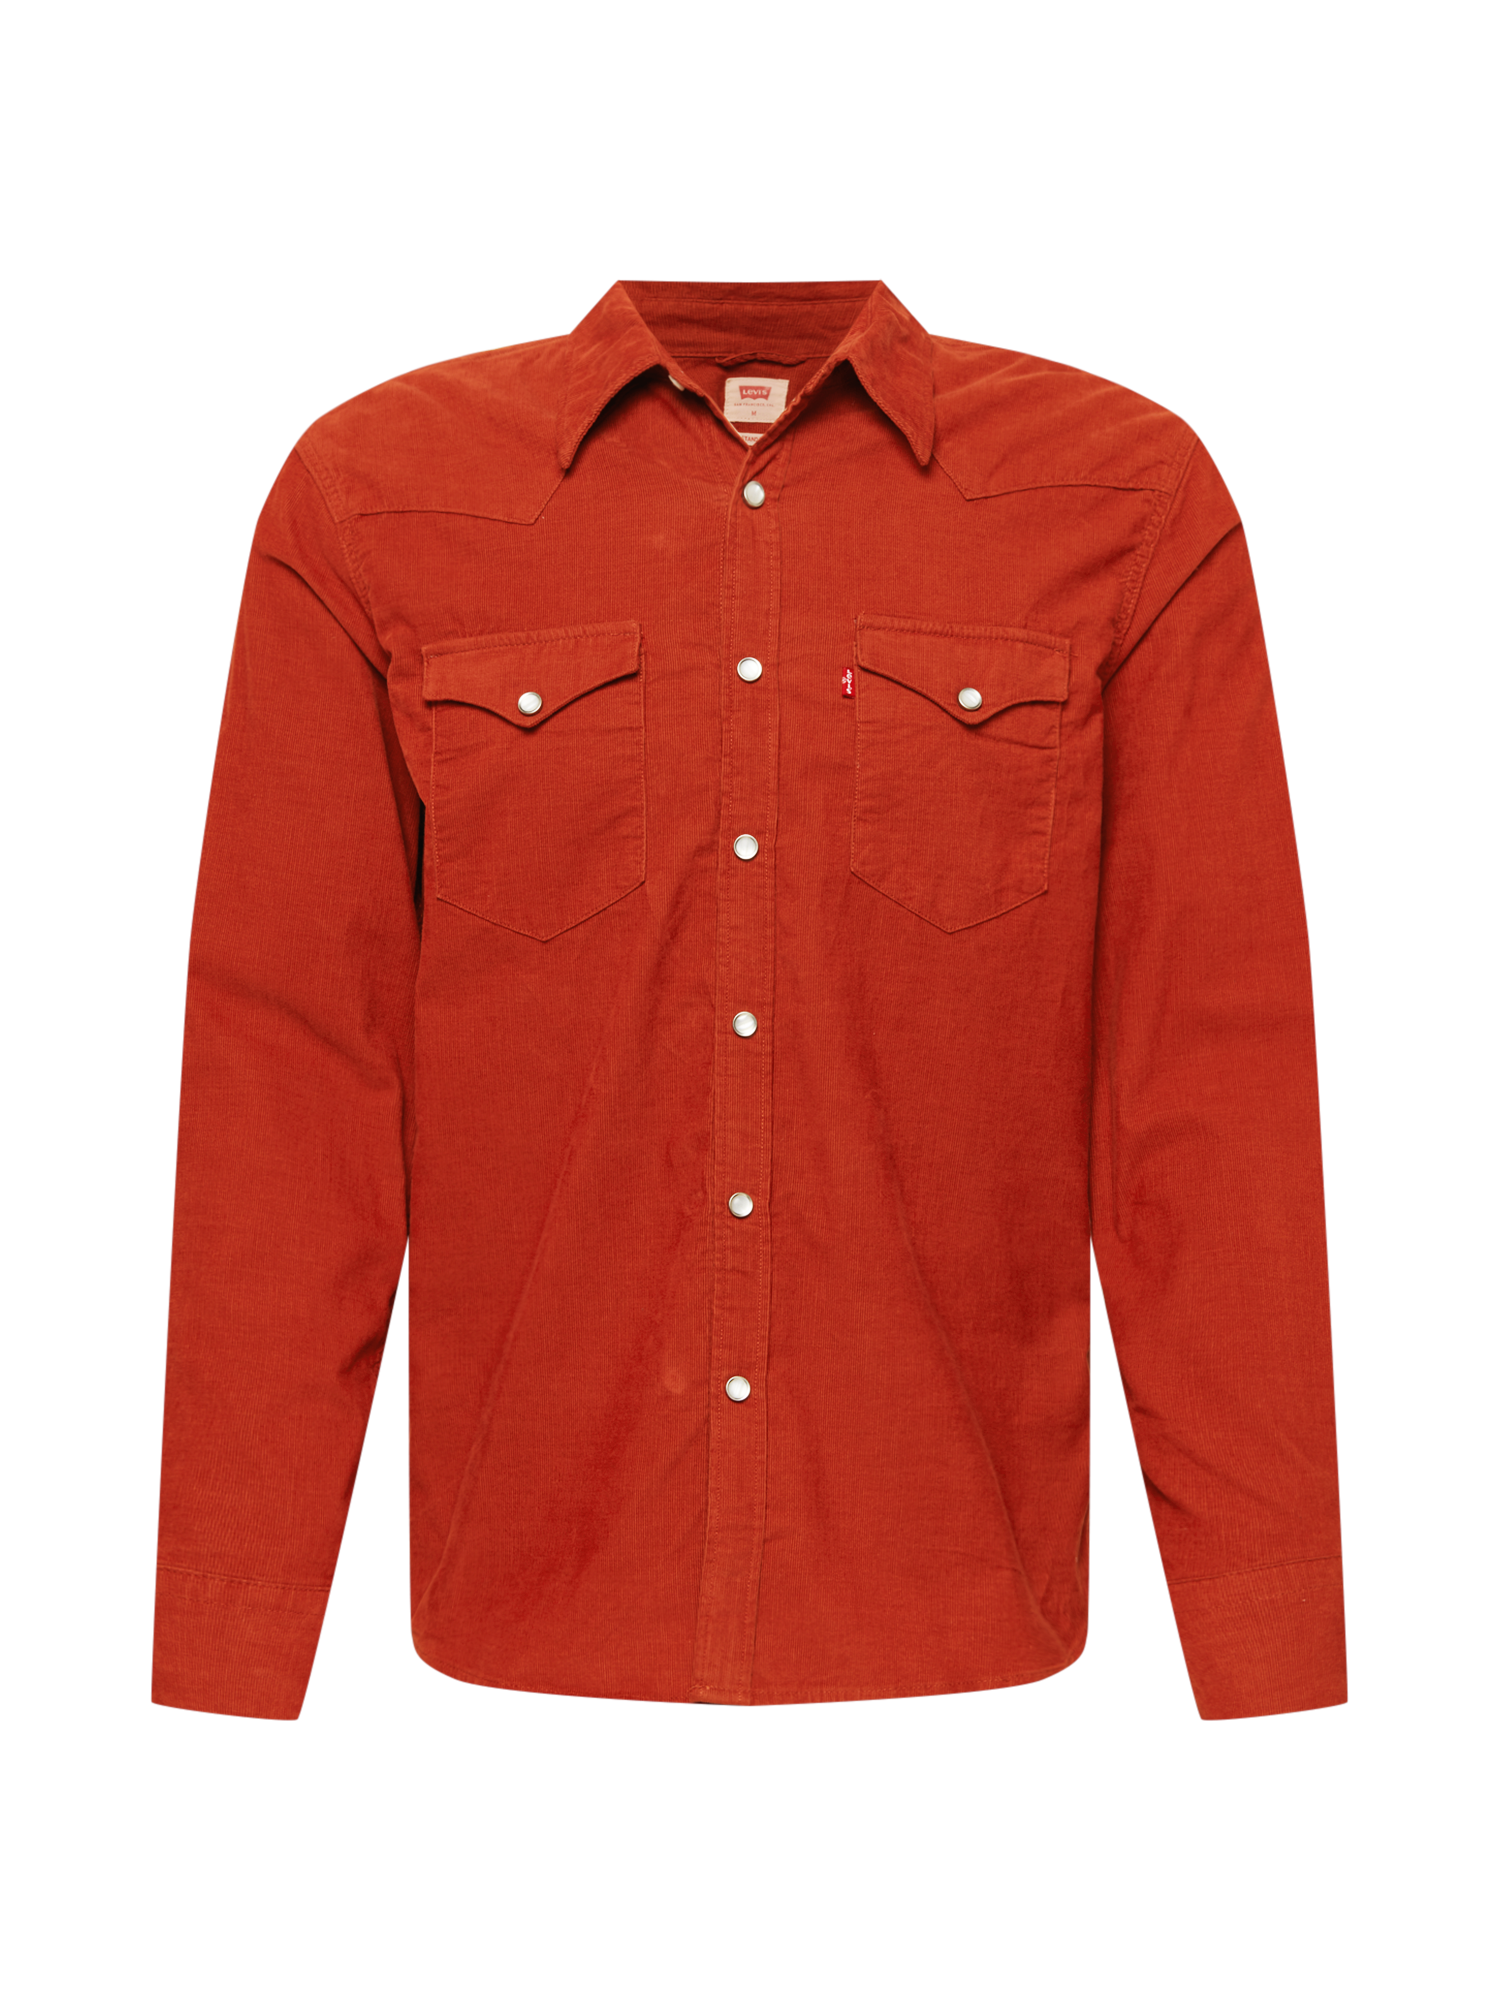 Mężczyźni Odzież LEVIS Koszula BARSTOW w kolorze Rdzawoczerwonym 